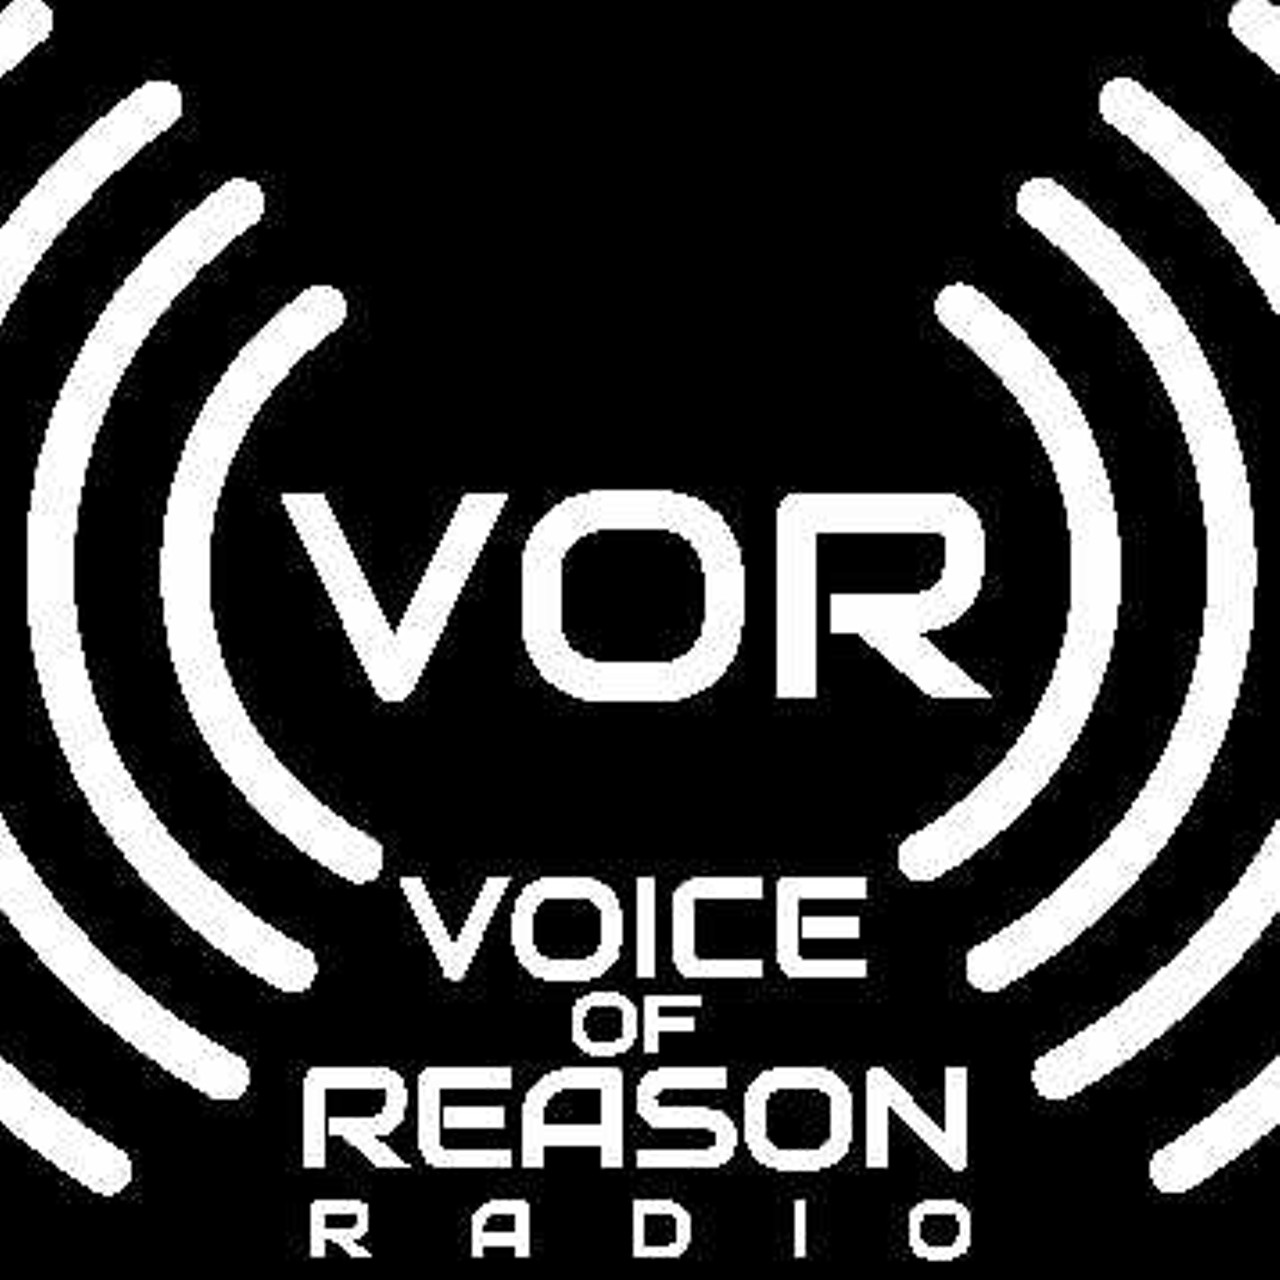 Voice of reason. Логотип Episode акустика. Ep logo. Episode logo. Voice space